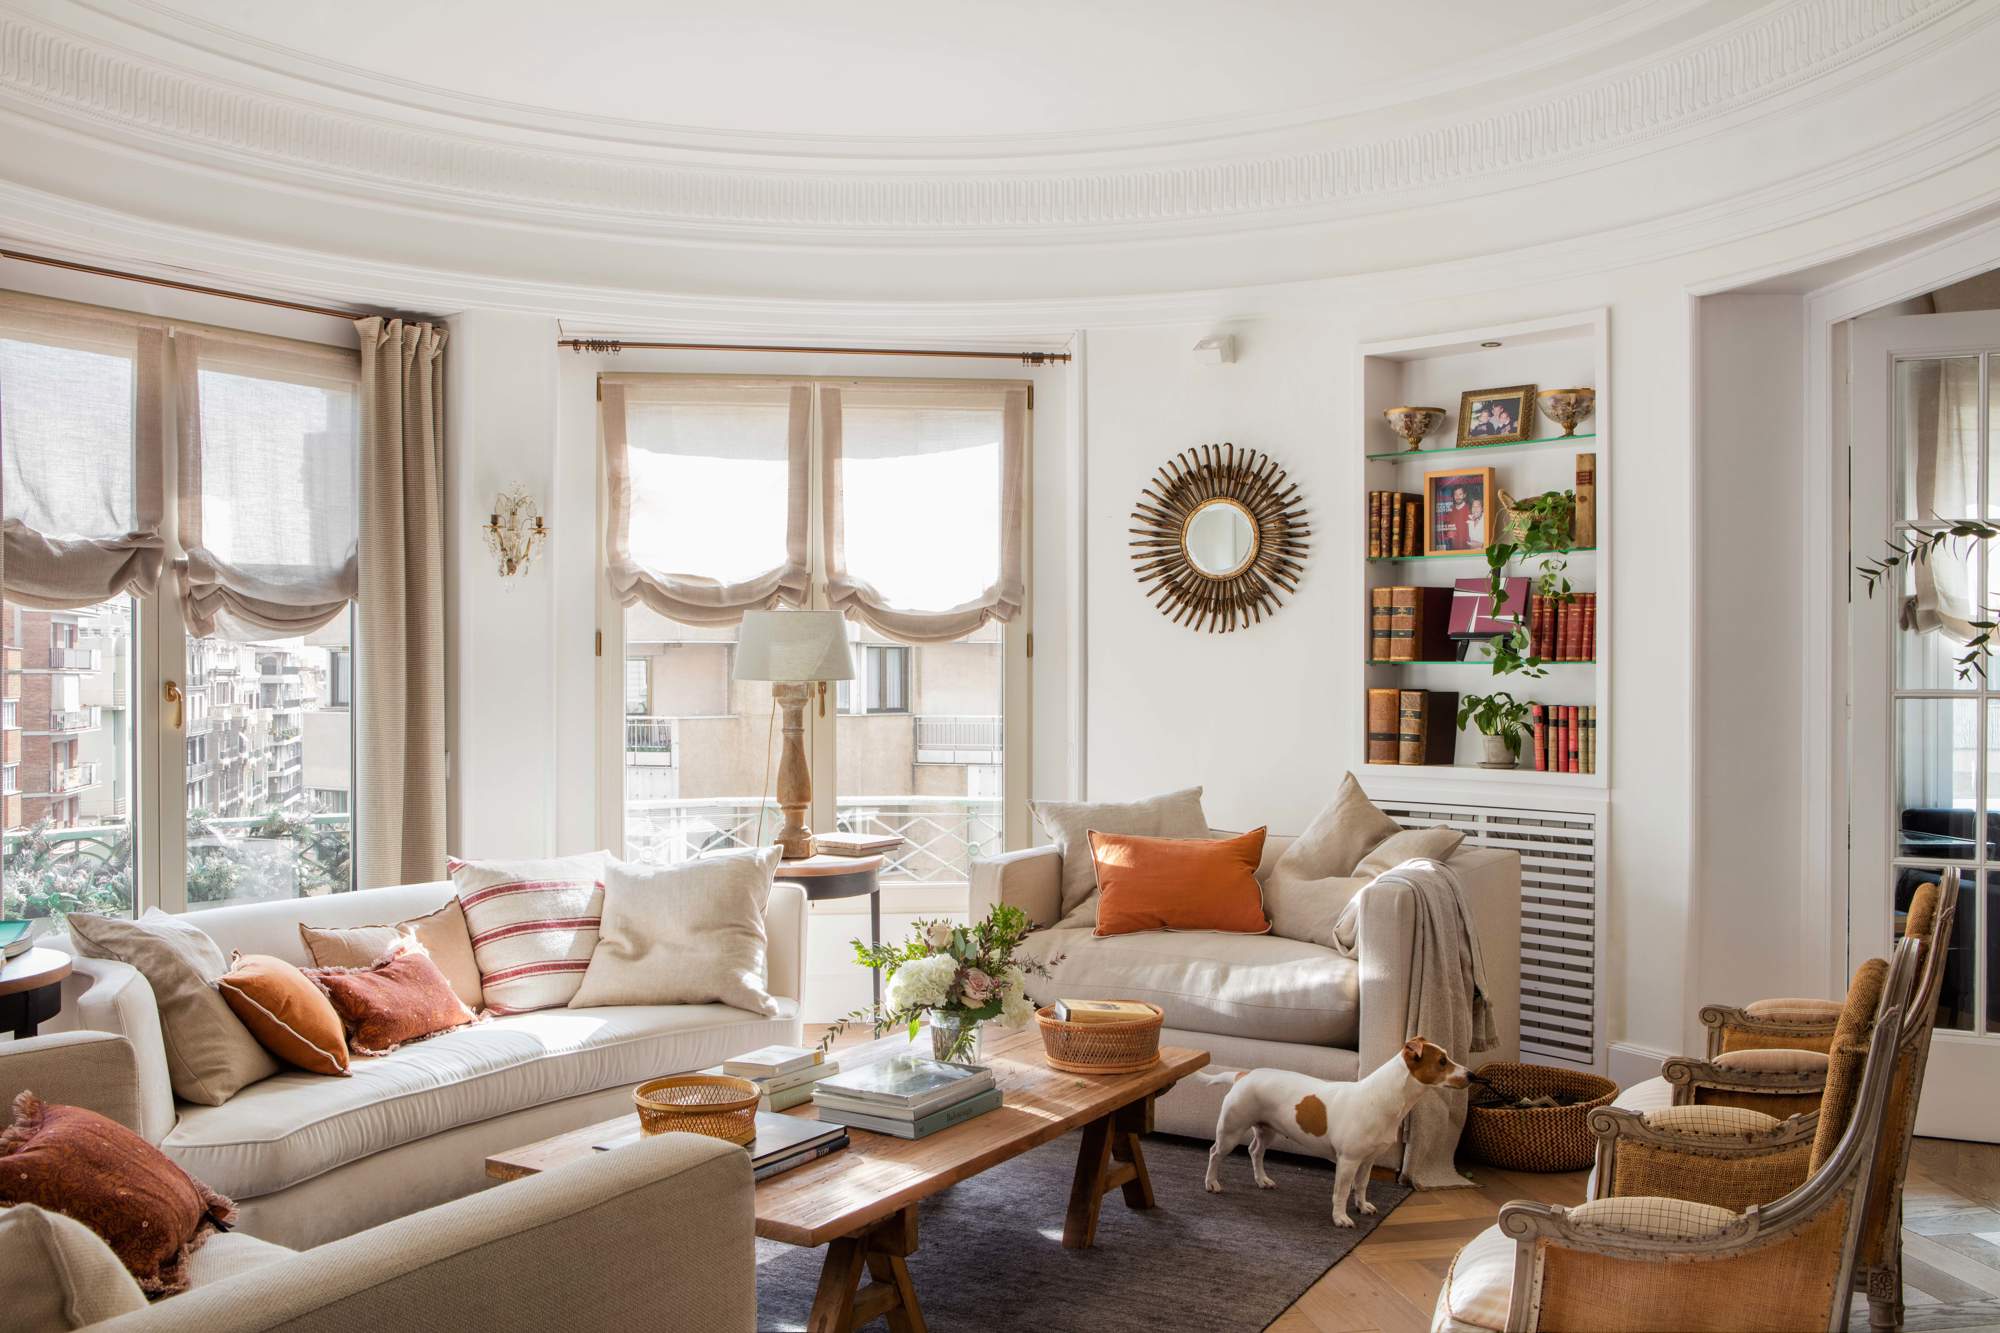 Salón clásico con sofás blancos, mesa de madera, butacas, estantería, espejo sol, estores y perro.